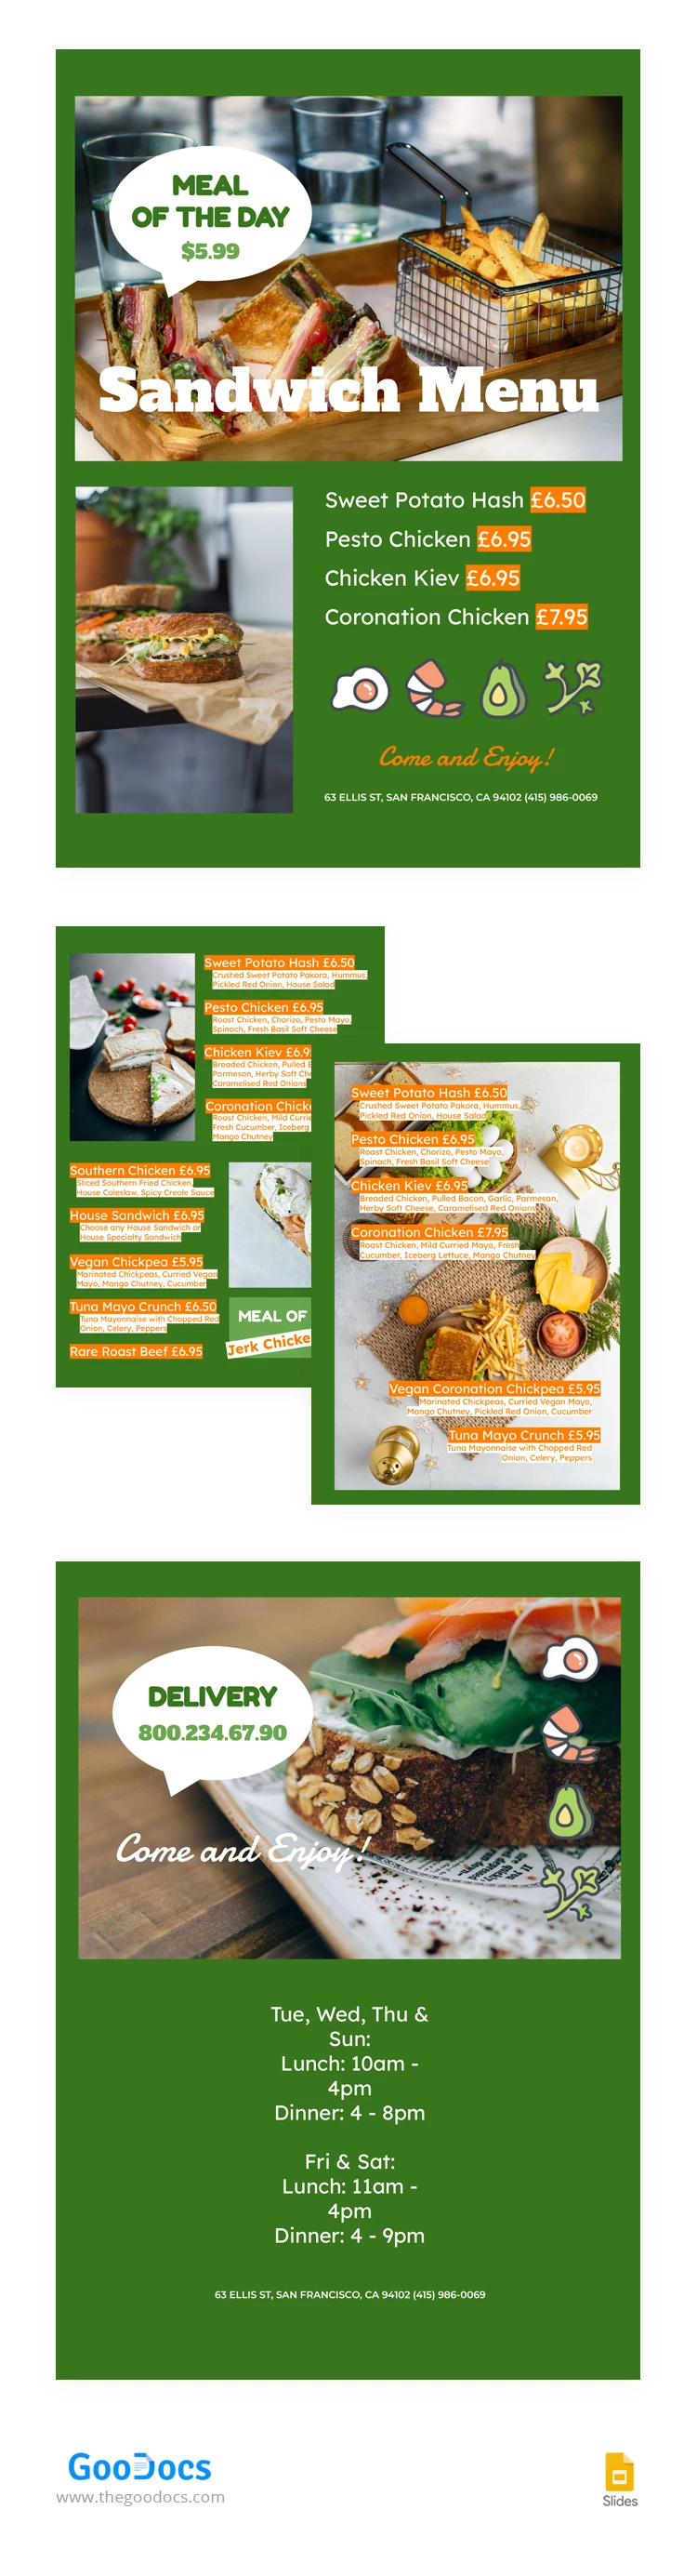 Menu do Restaurante Sandwich Green - free Google Docs Template - 10067083